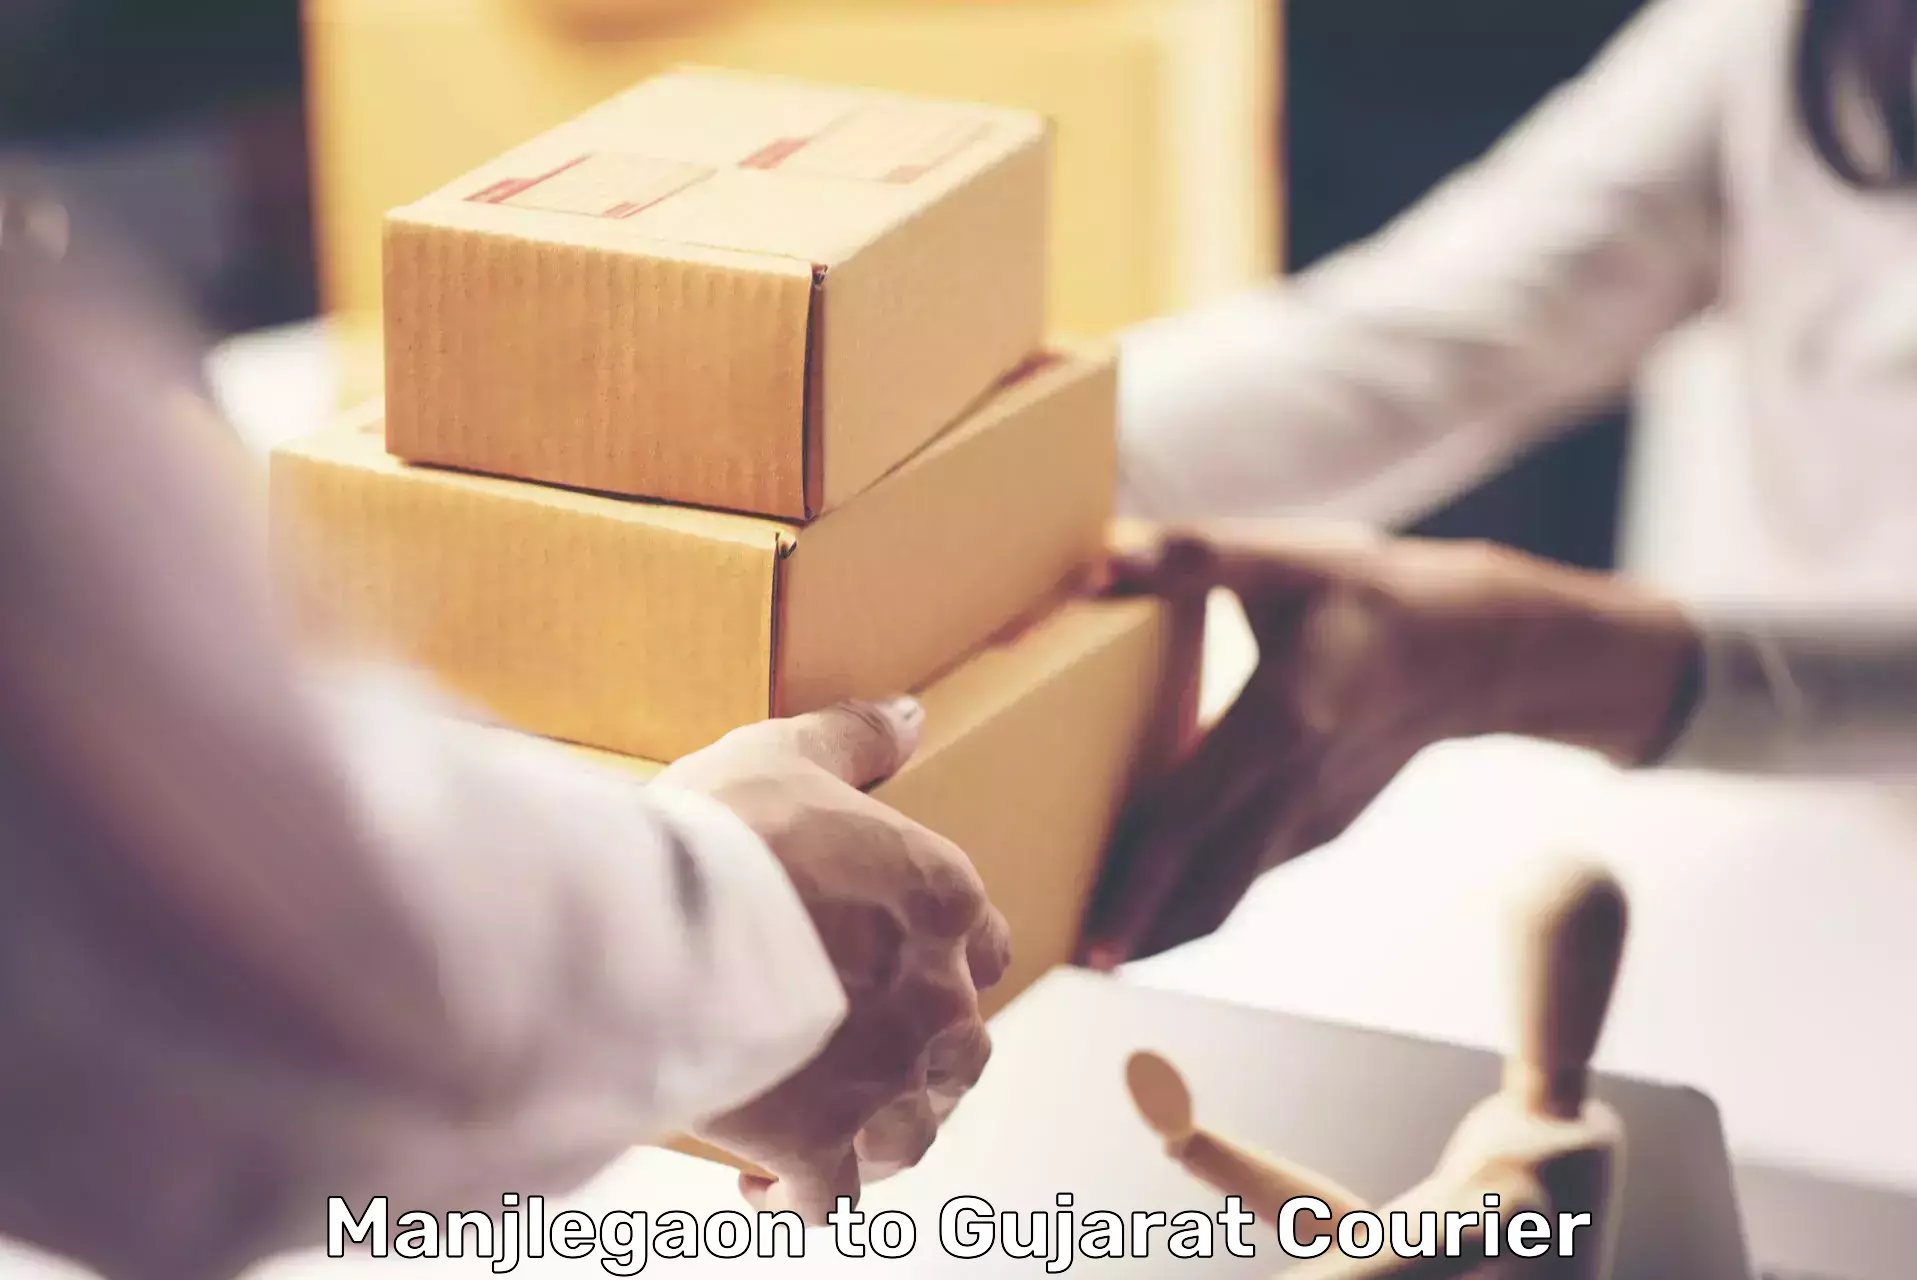 Global parcel delivery Manjlegaon to Gujarat